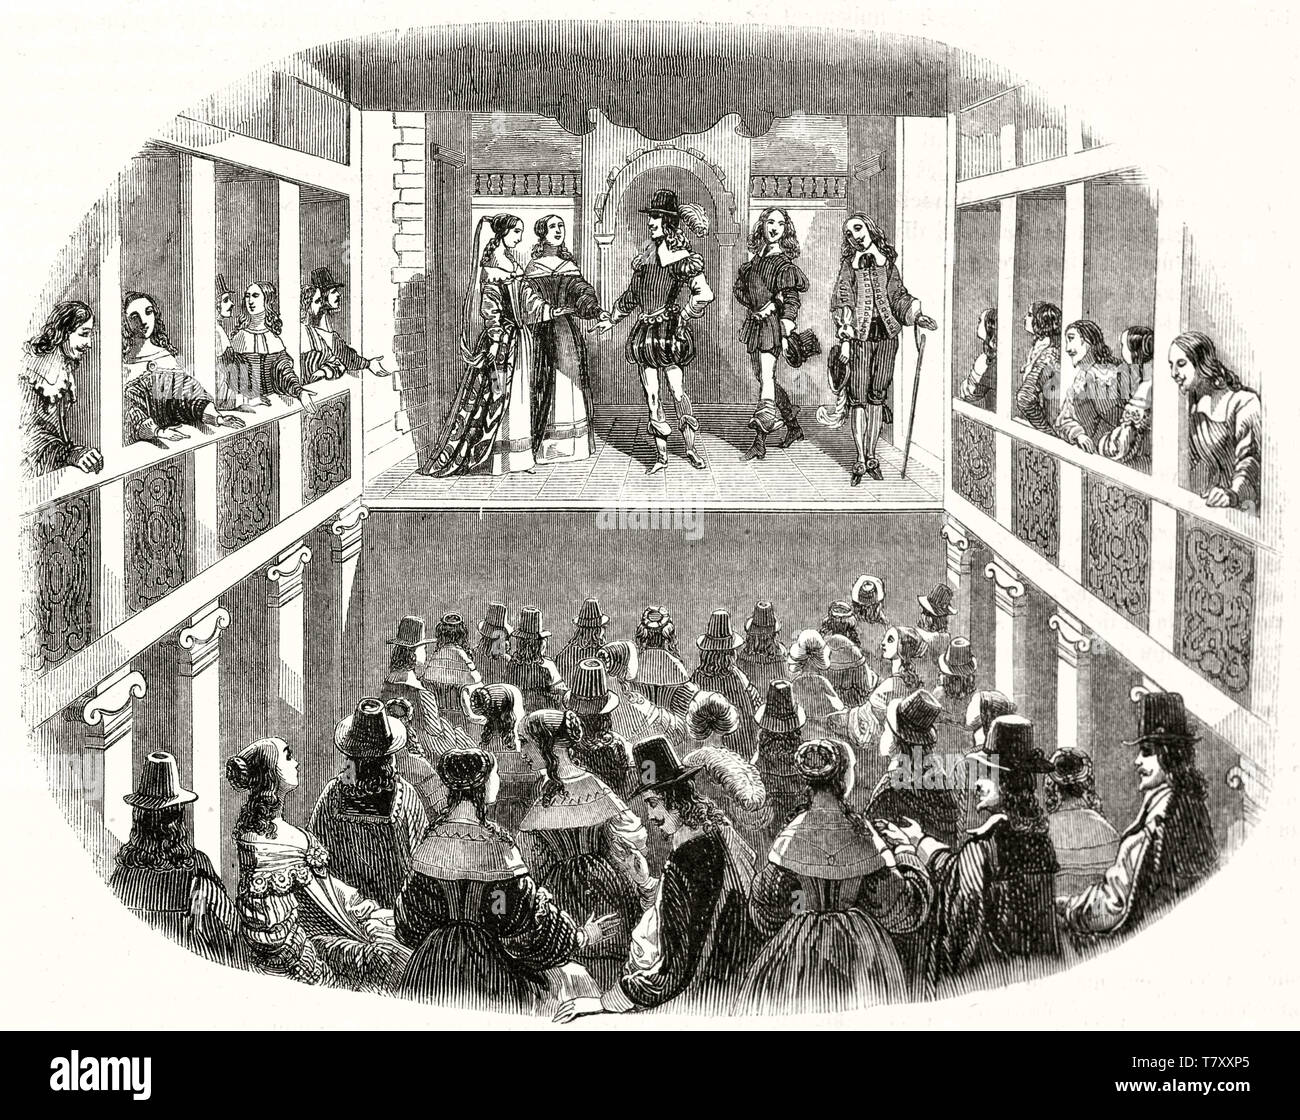 Allgemeine Ansicht eines alten Showroom in Paris, Louis XIII Alter, reich an aristocratyc Menschen an die Models auf der Bühne. Nach Chauveau publ. Auf Magasin Pittoresque Paris 1848 Showroom Stockfoto